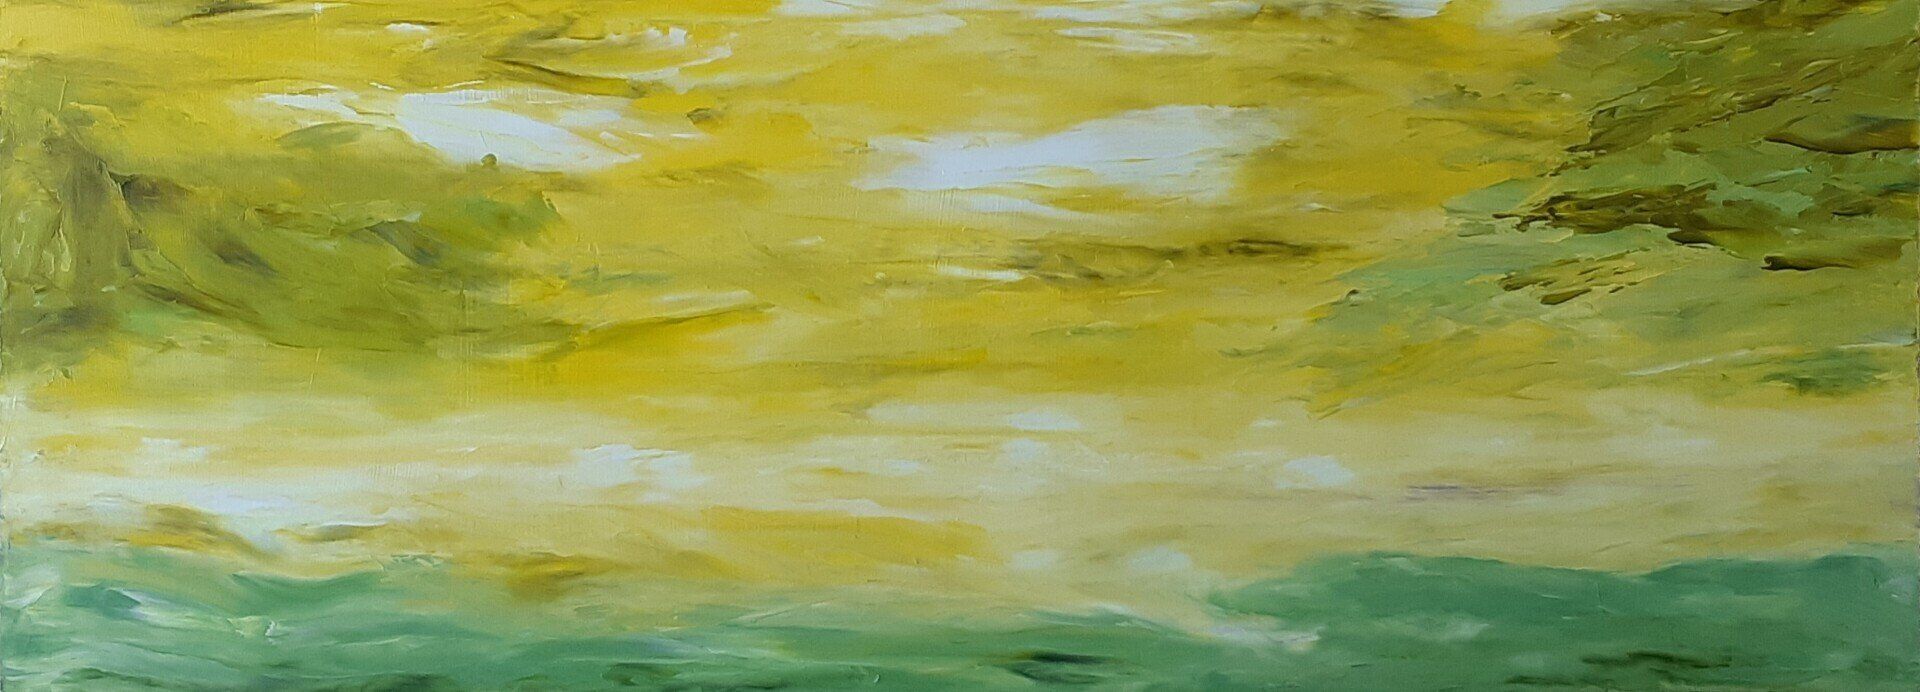 Cantata 6 est une huile sur masonite de 20 po x 9 po. Avec un mélange d'or vert, de jaune et de vert SAP, cette peinture vous apporte, ainsi que tous les éléments d'un paysage, au bord de l'horizon où l'au-delà est à votre portée .